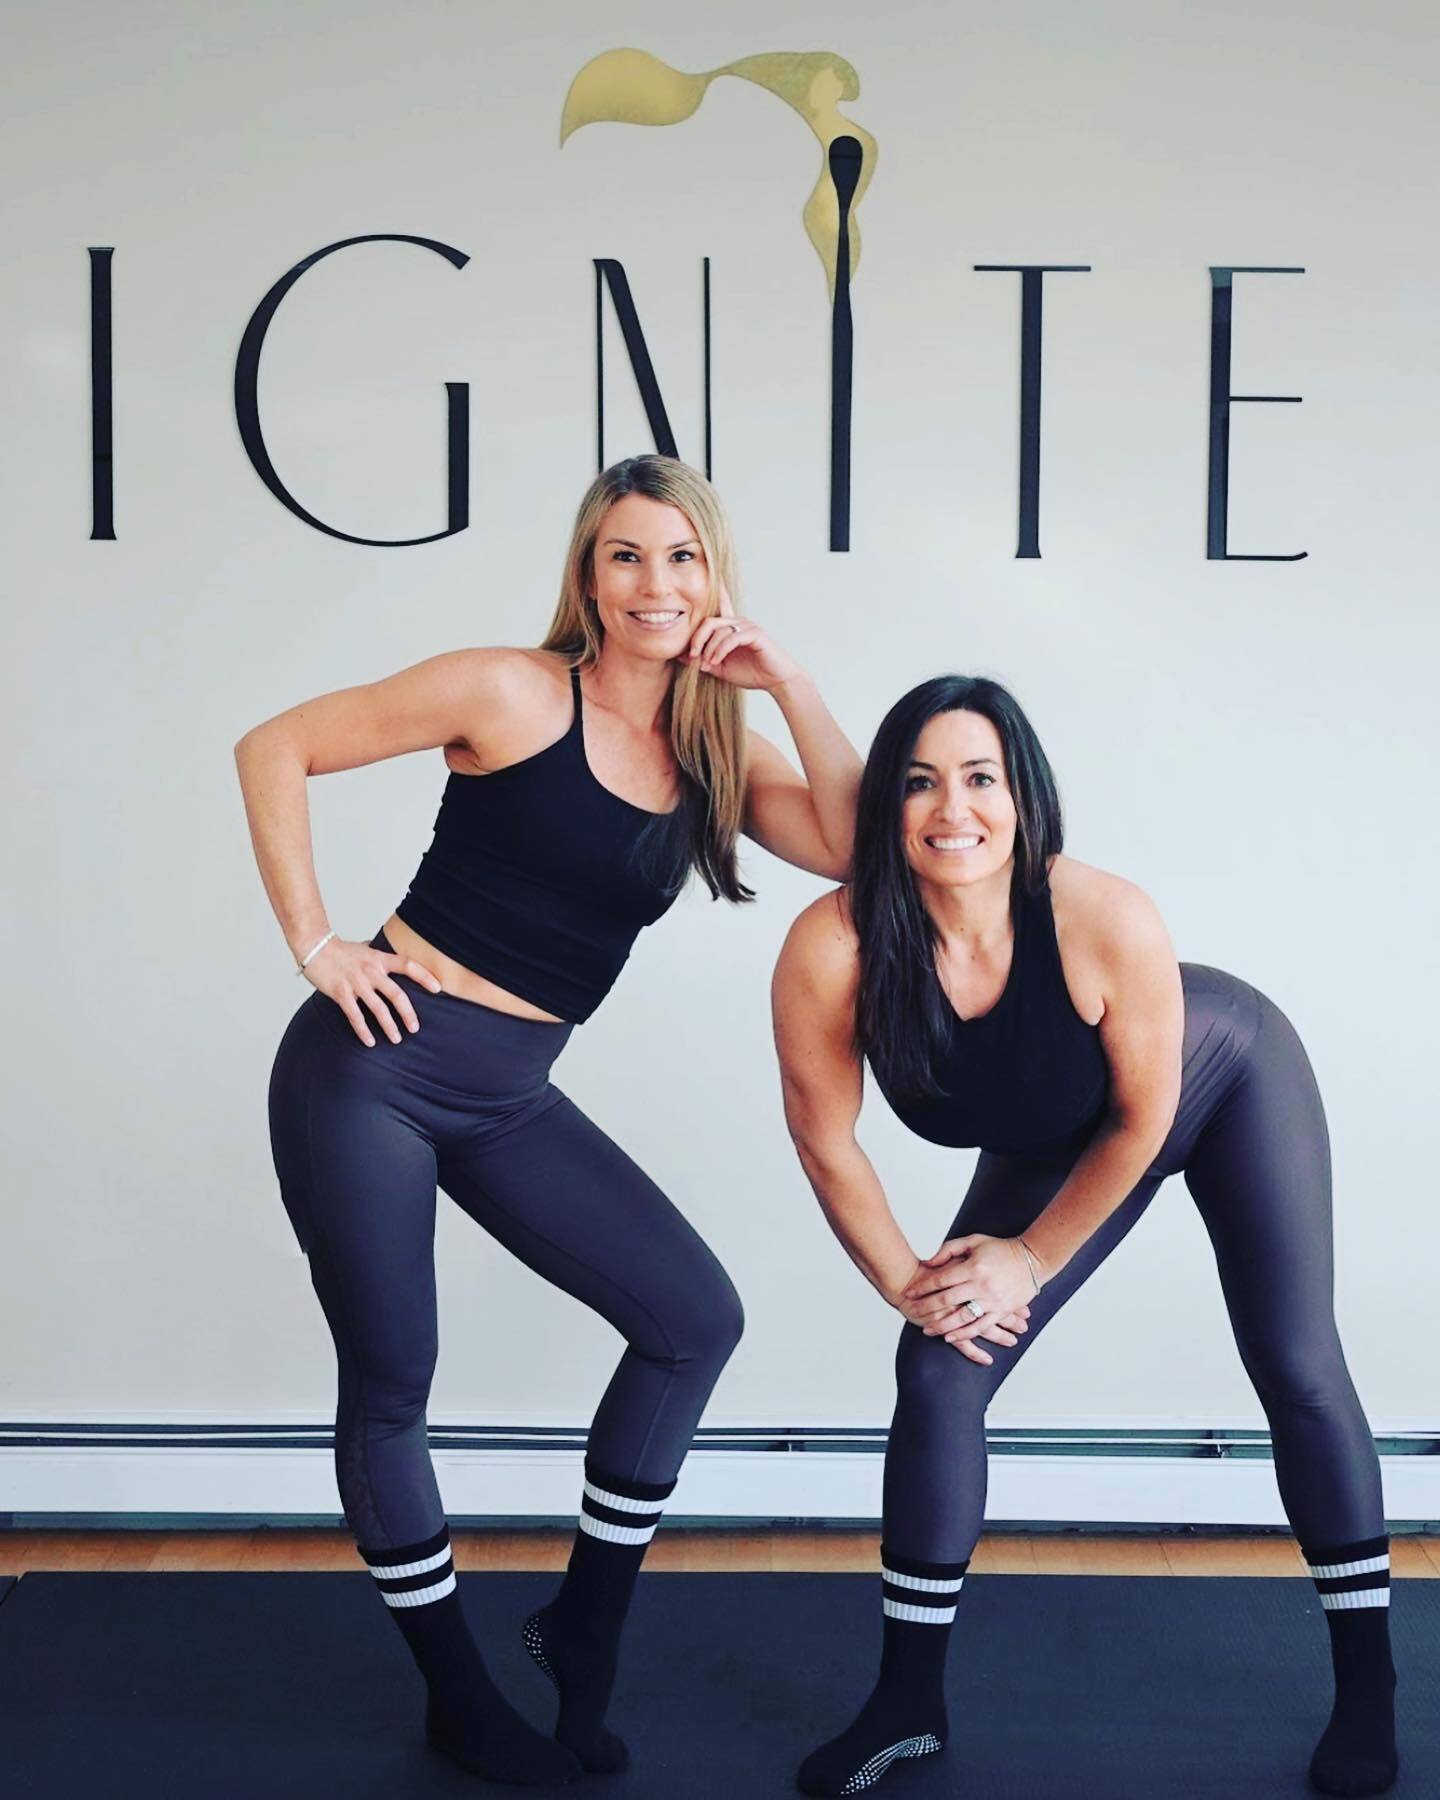 Running Bare Studio Yoga Pants for Women. Workout Leggings